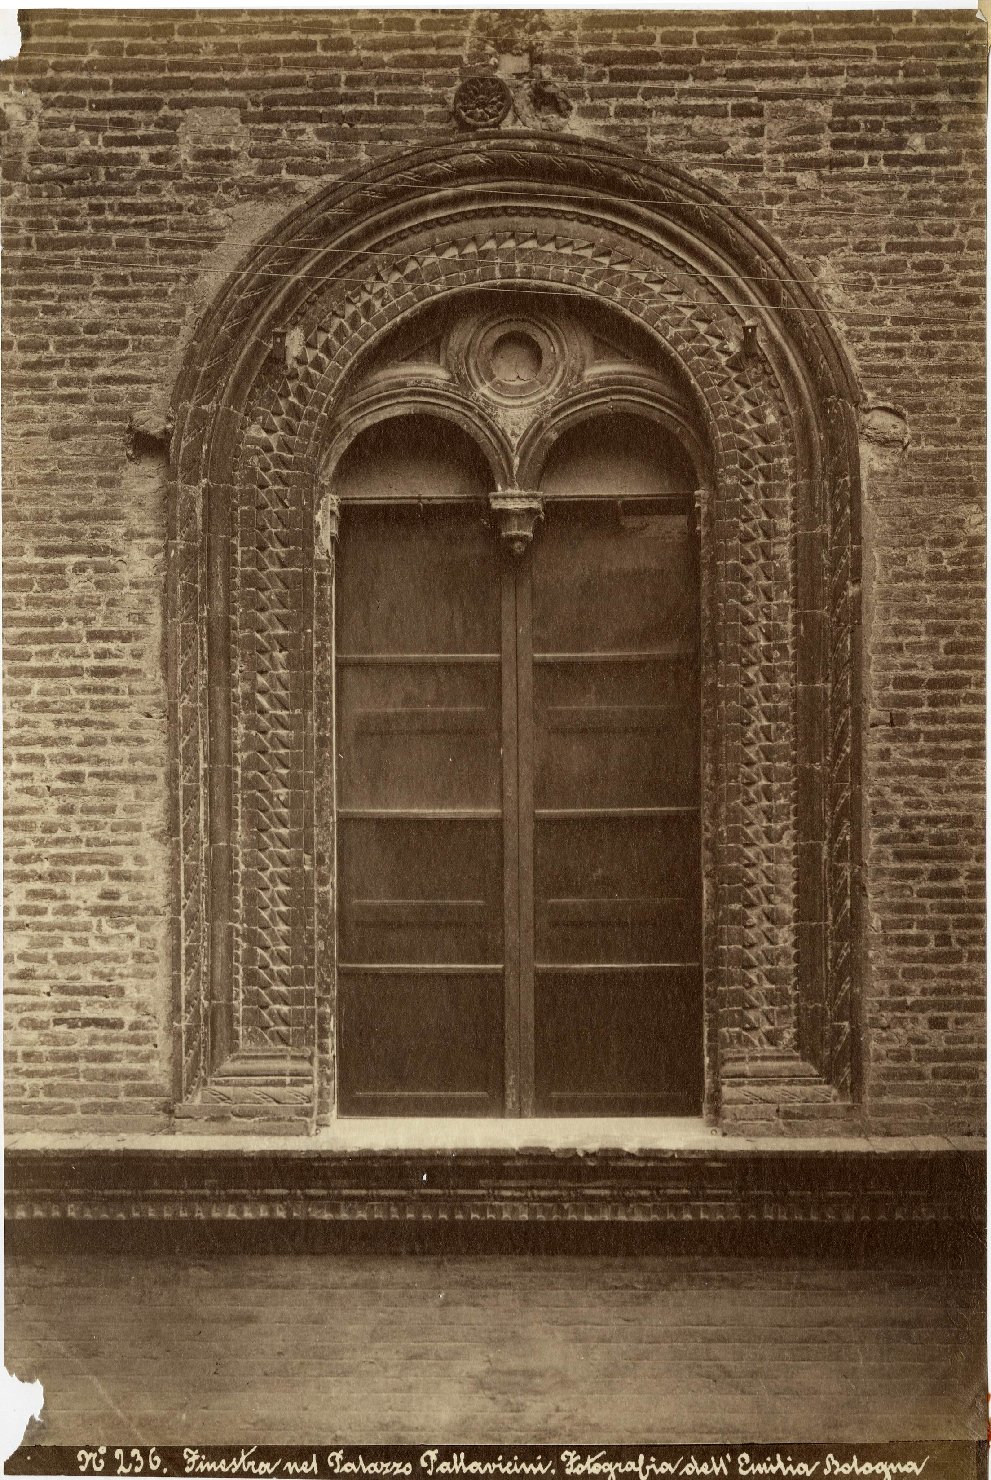 Architettura - Palazzi - Finestre - Cornici - Sec. XV (positivo, elemento-parte componente) di Fotografia dell'Emilia (ditta) (XIX)